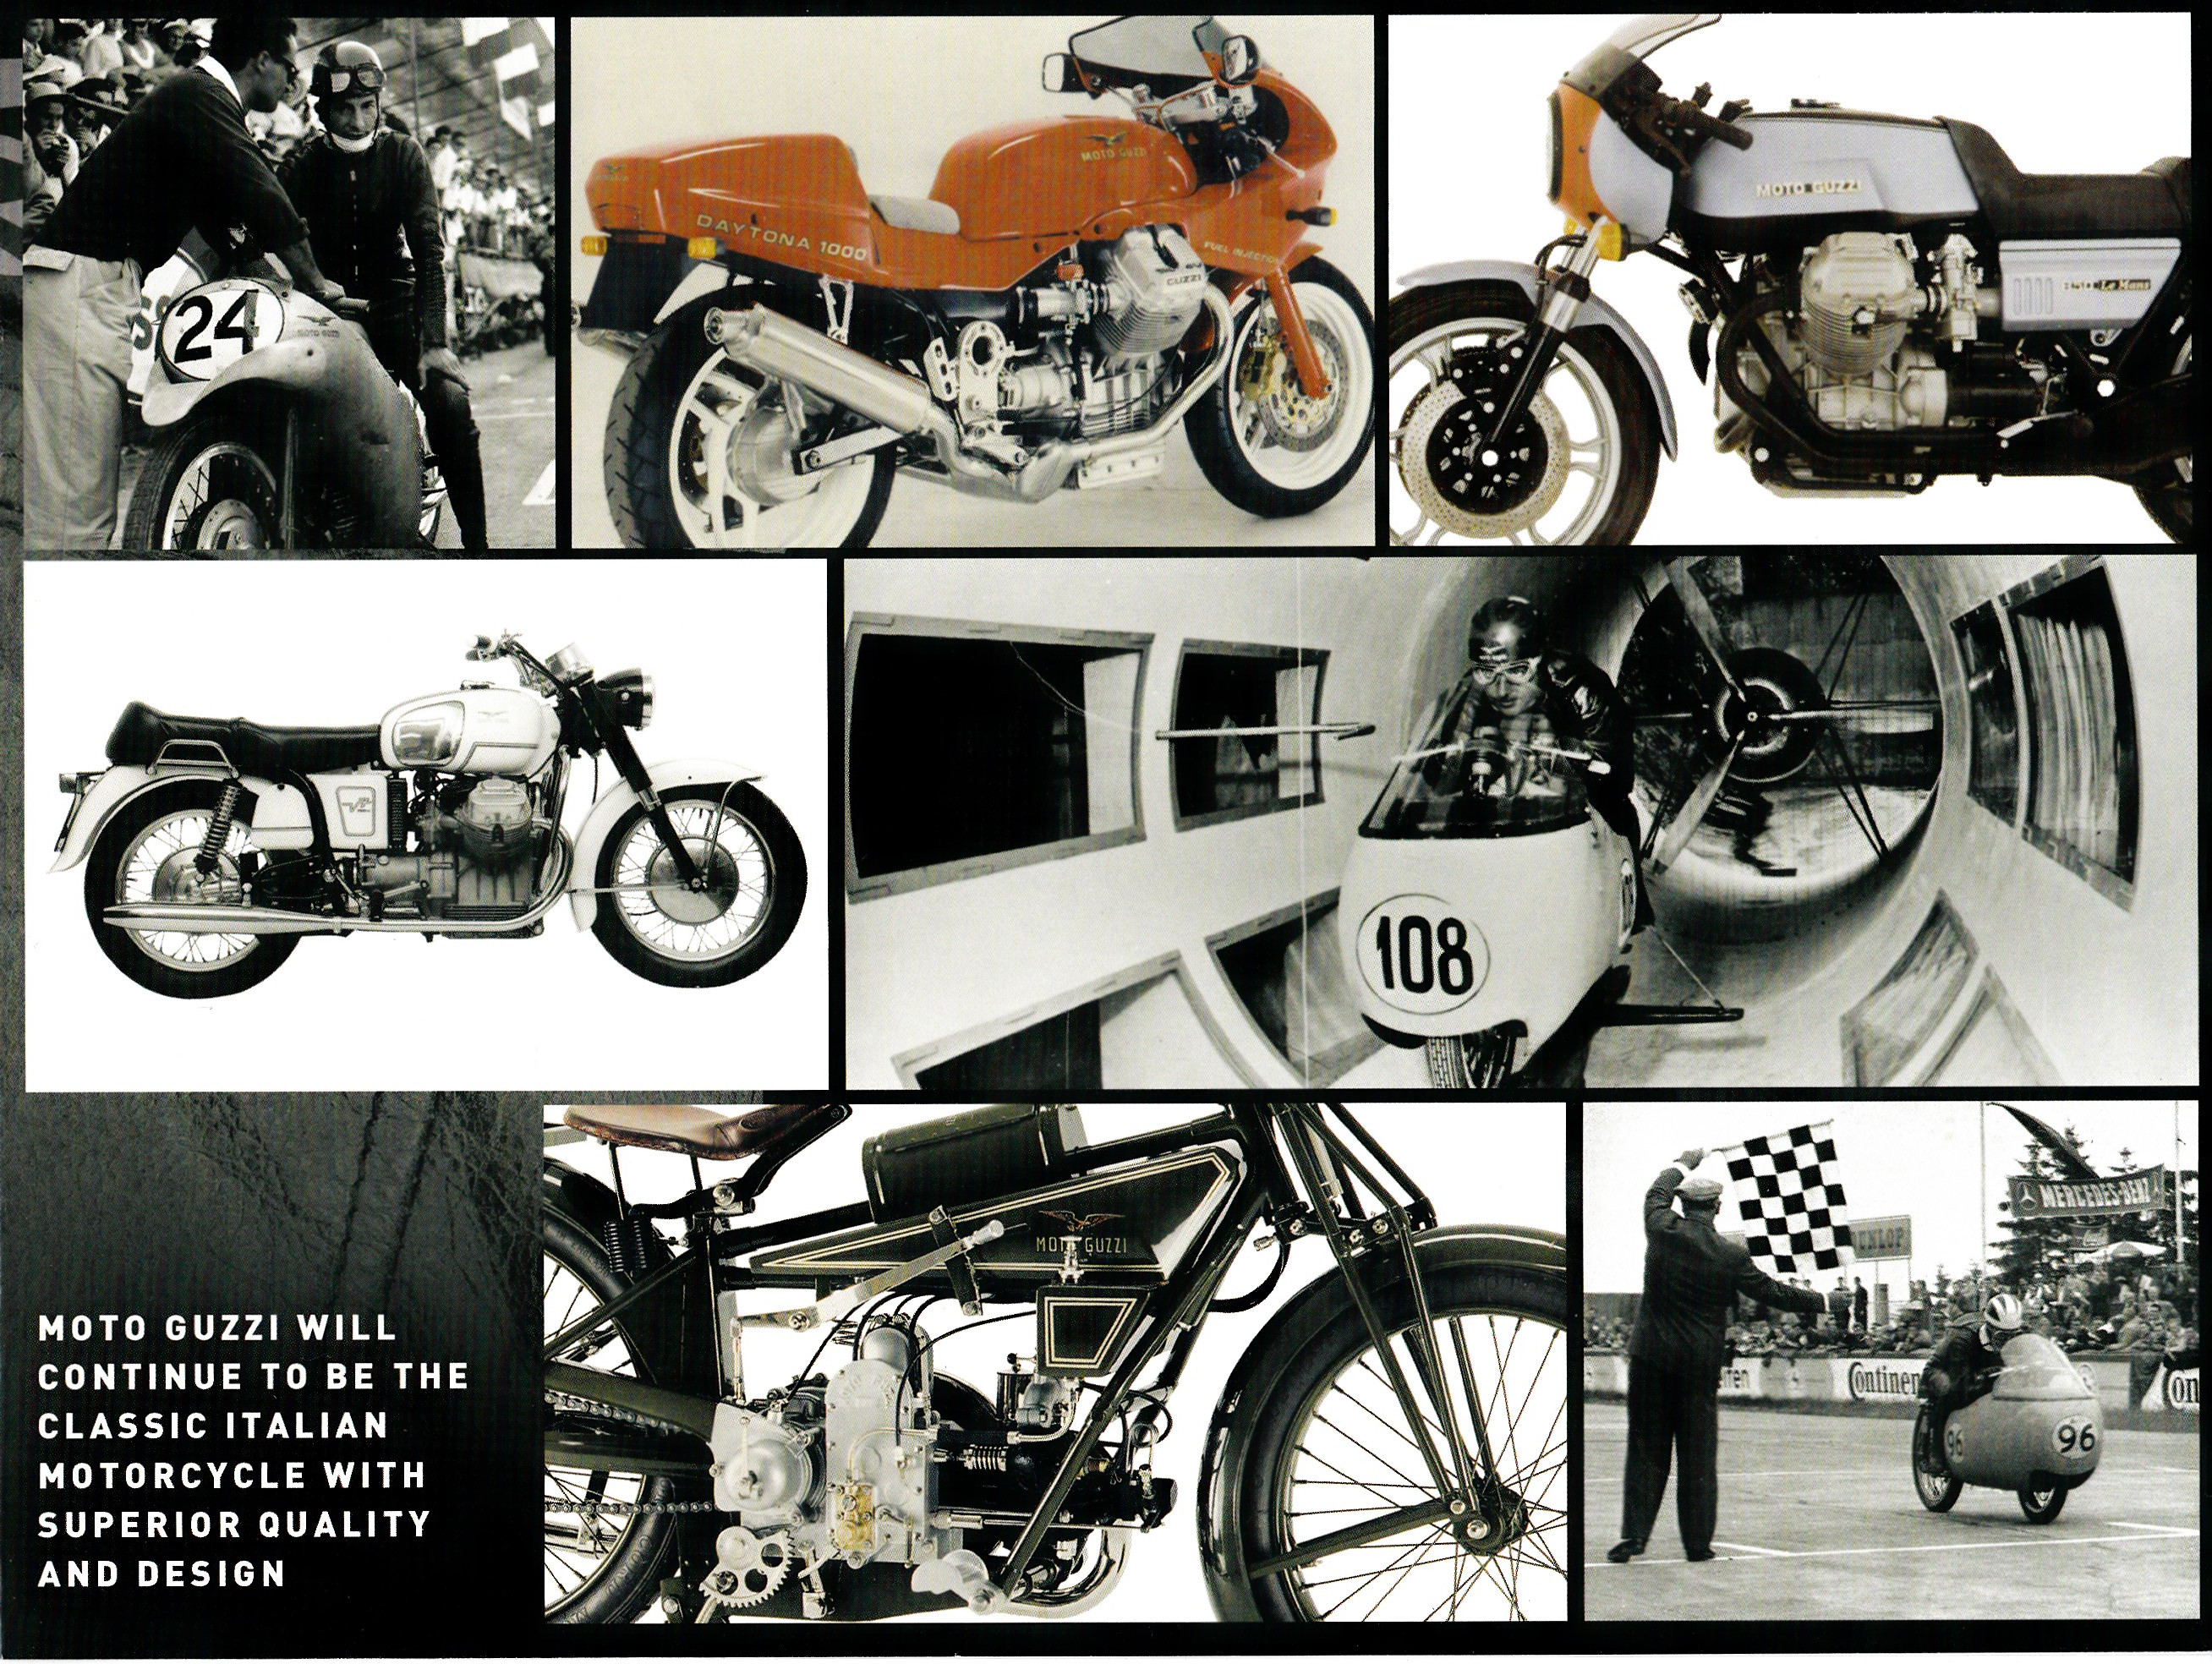 Brochure - Moto Guzzi Collection 2013